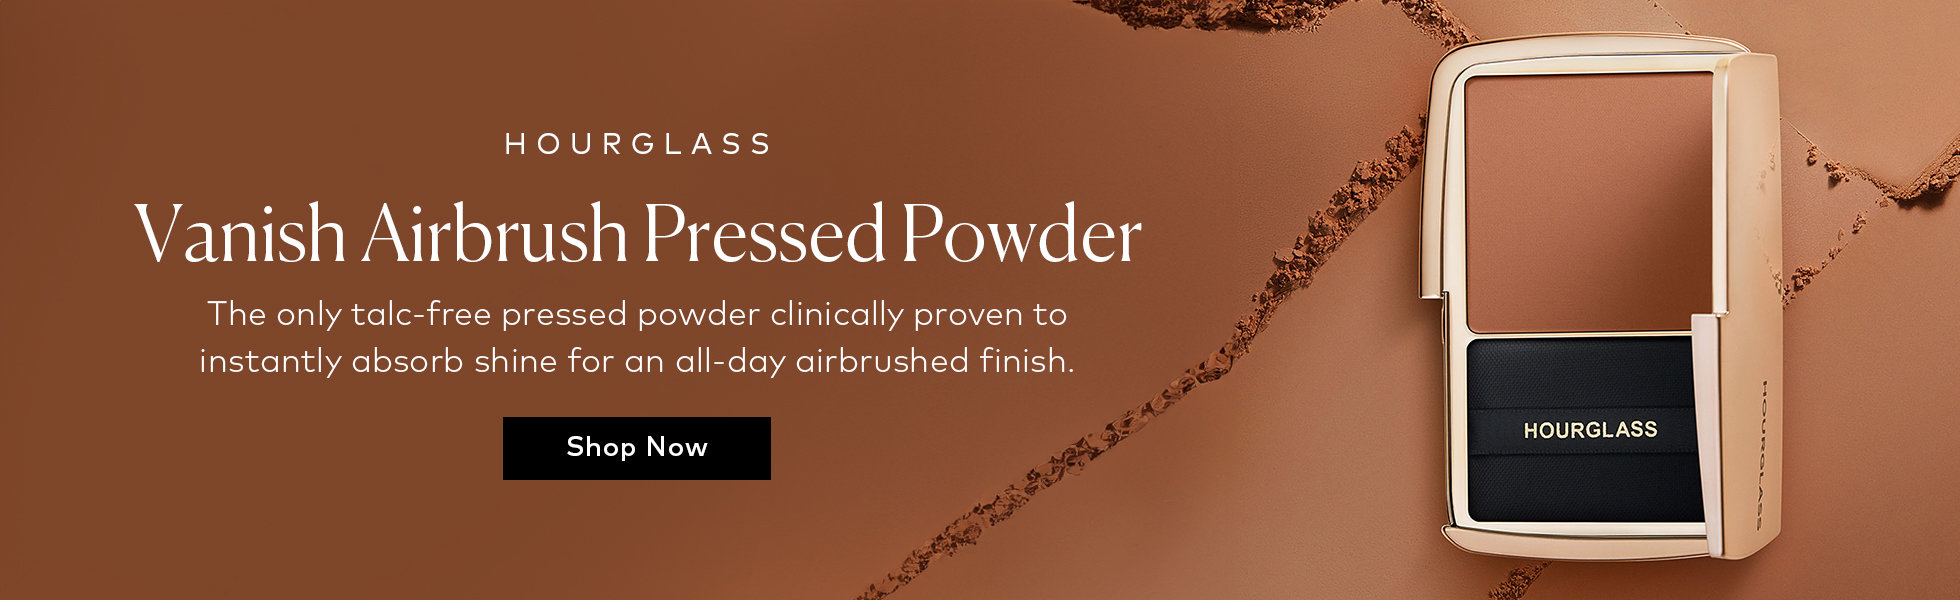 Hourglass Vanish Airbrush Pressed Powder